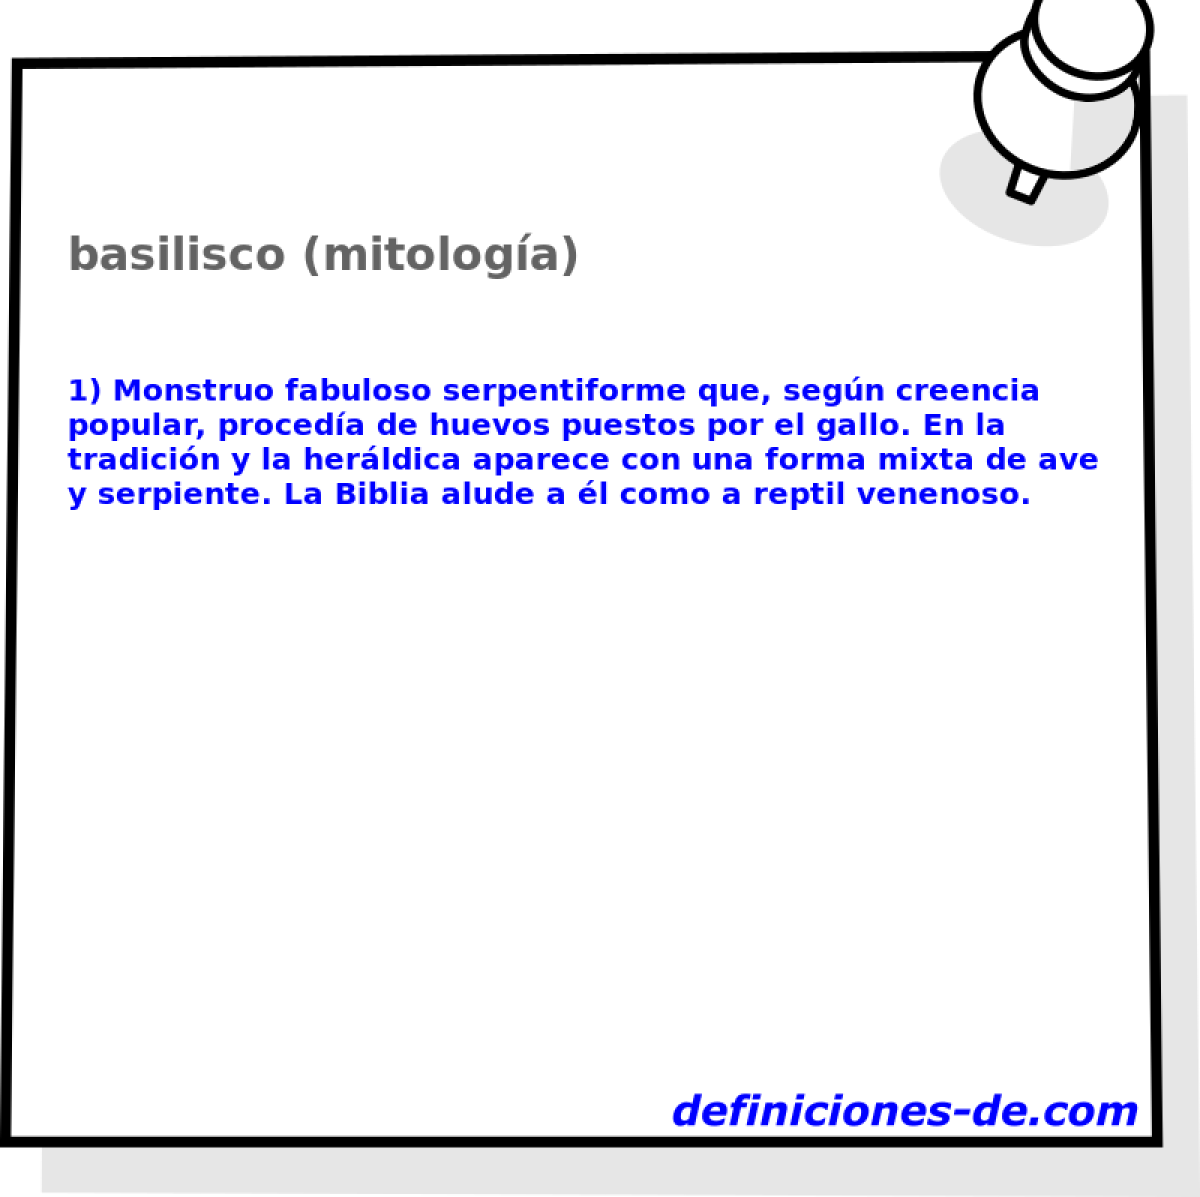 basilisco (mitologa) 